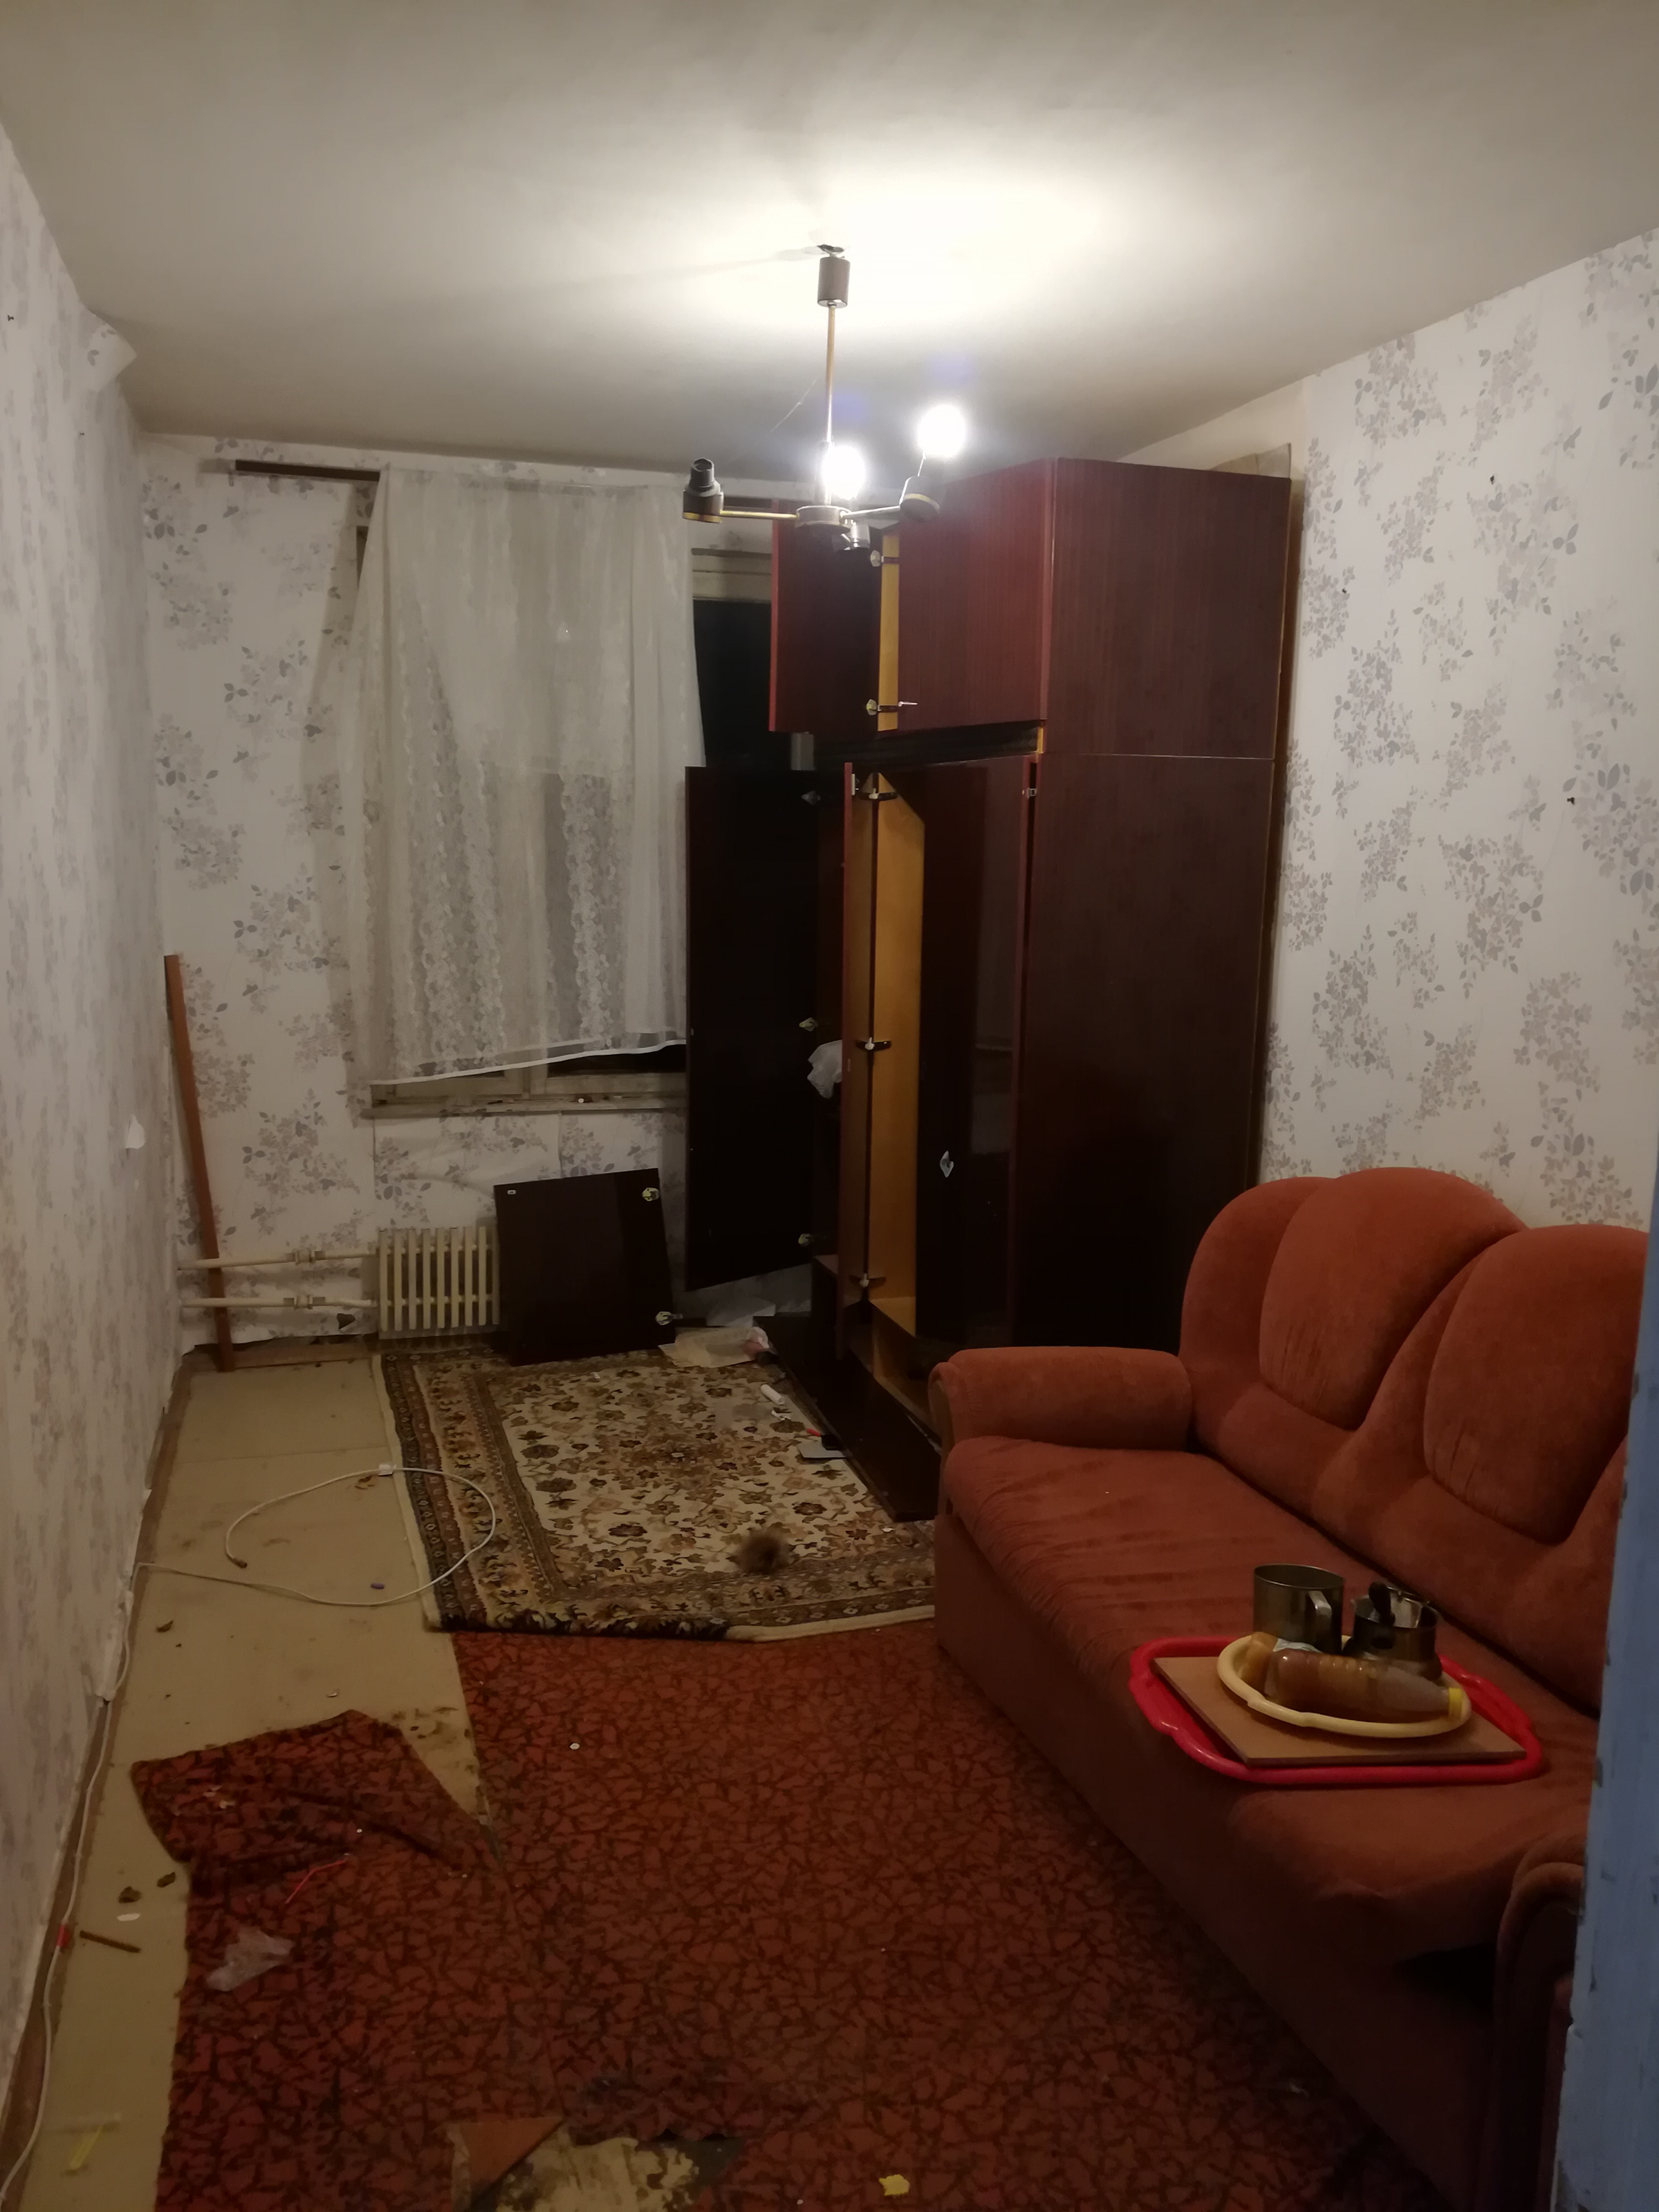 Комната, в которой пришлось жить три с половиной года до покупки своей квартиры